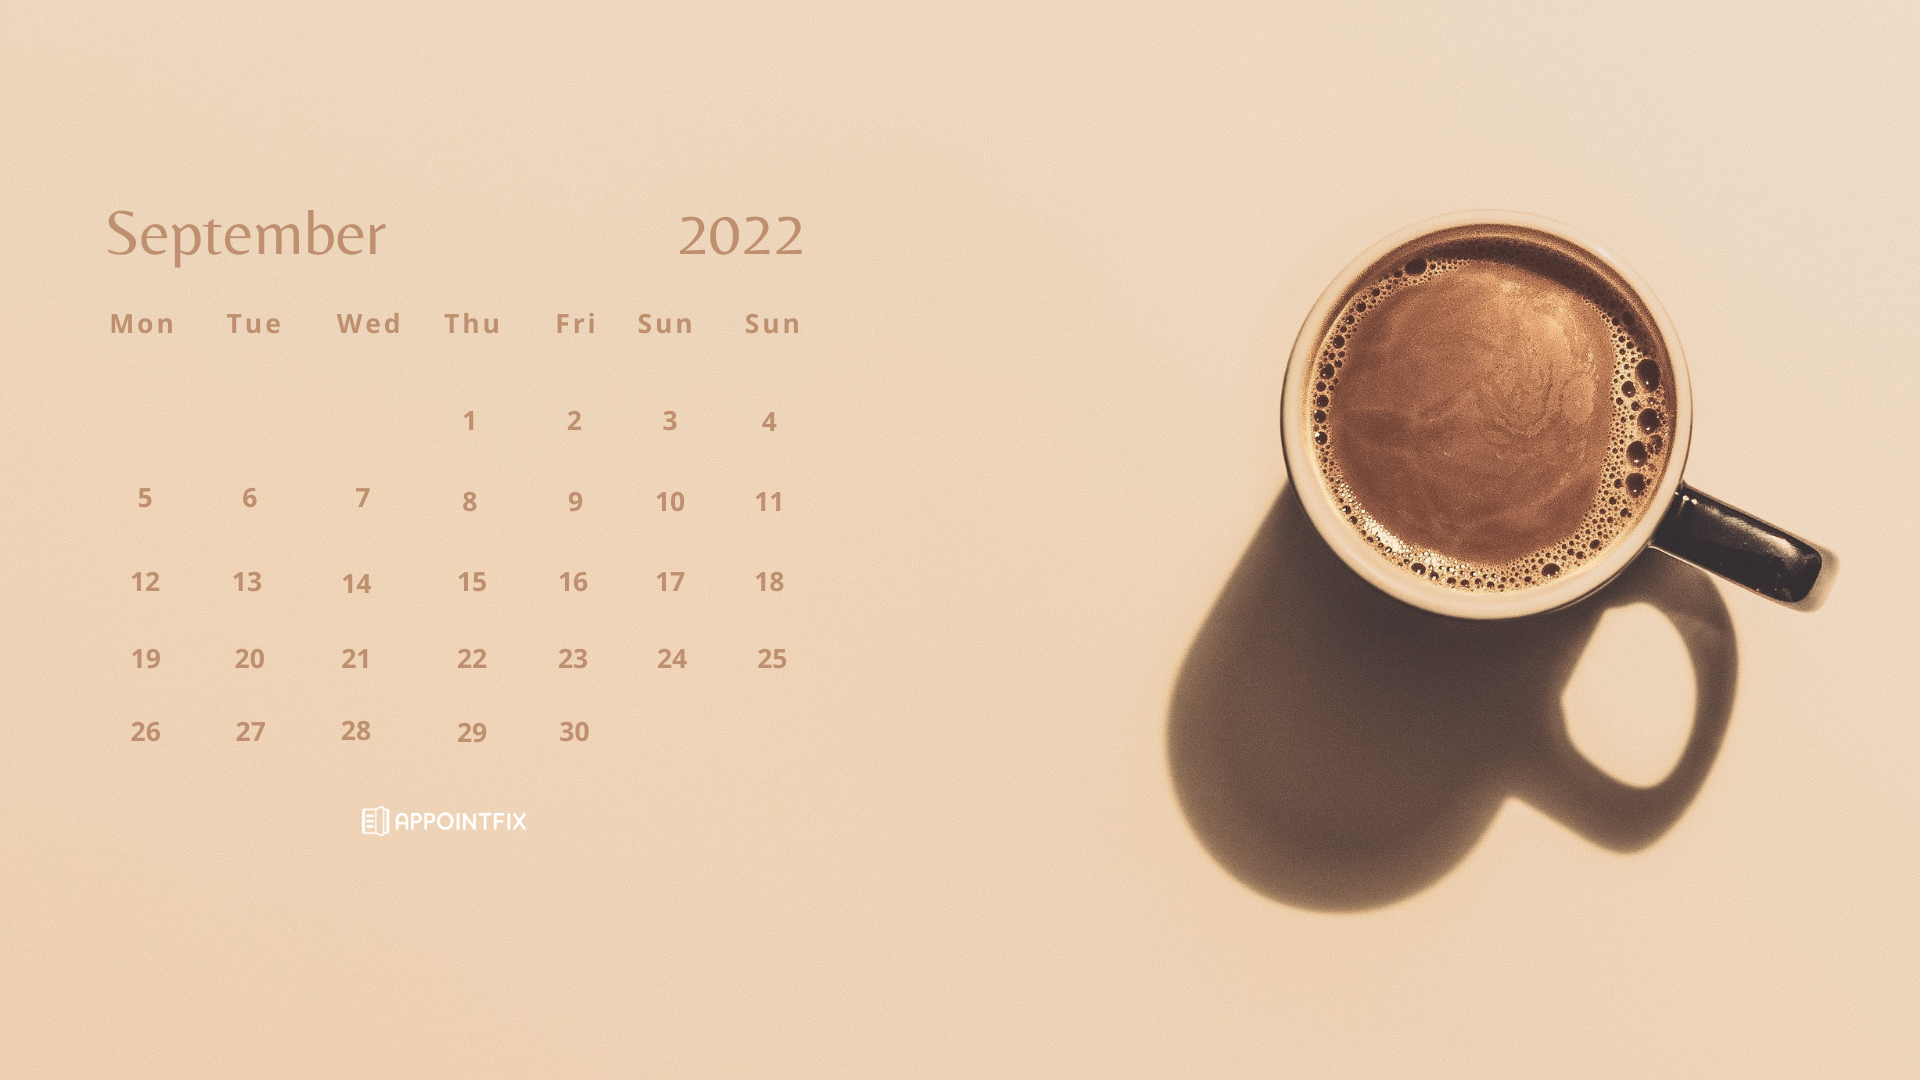 Lịch tháng 9 năm 2022: Lịch tháng 9 năm 2022 sẽ giúp bạn tổ chức các kế hoạch của mình một cách thông minh và hiệu quả. Tìm ra các sự kiện và ngày lễ quan trọng của tháng này và chuẩn bị cho chúng một cách tốt nhất.